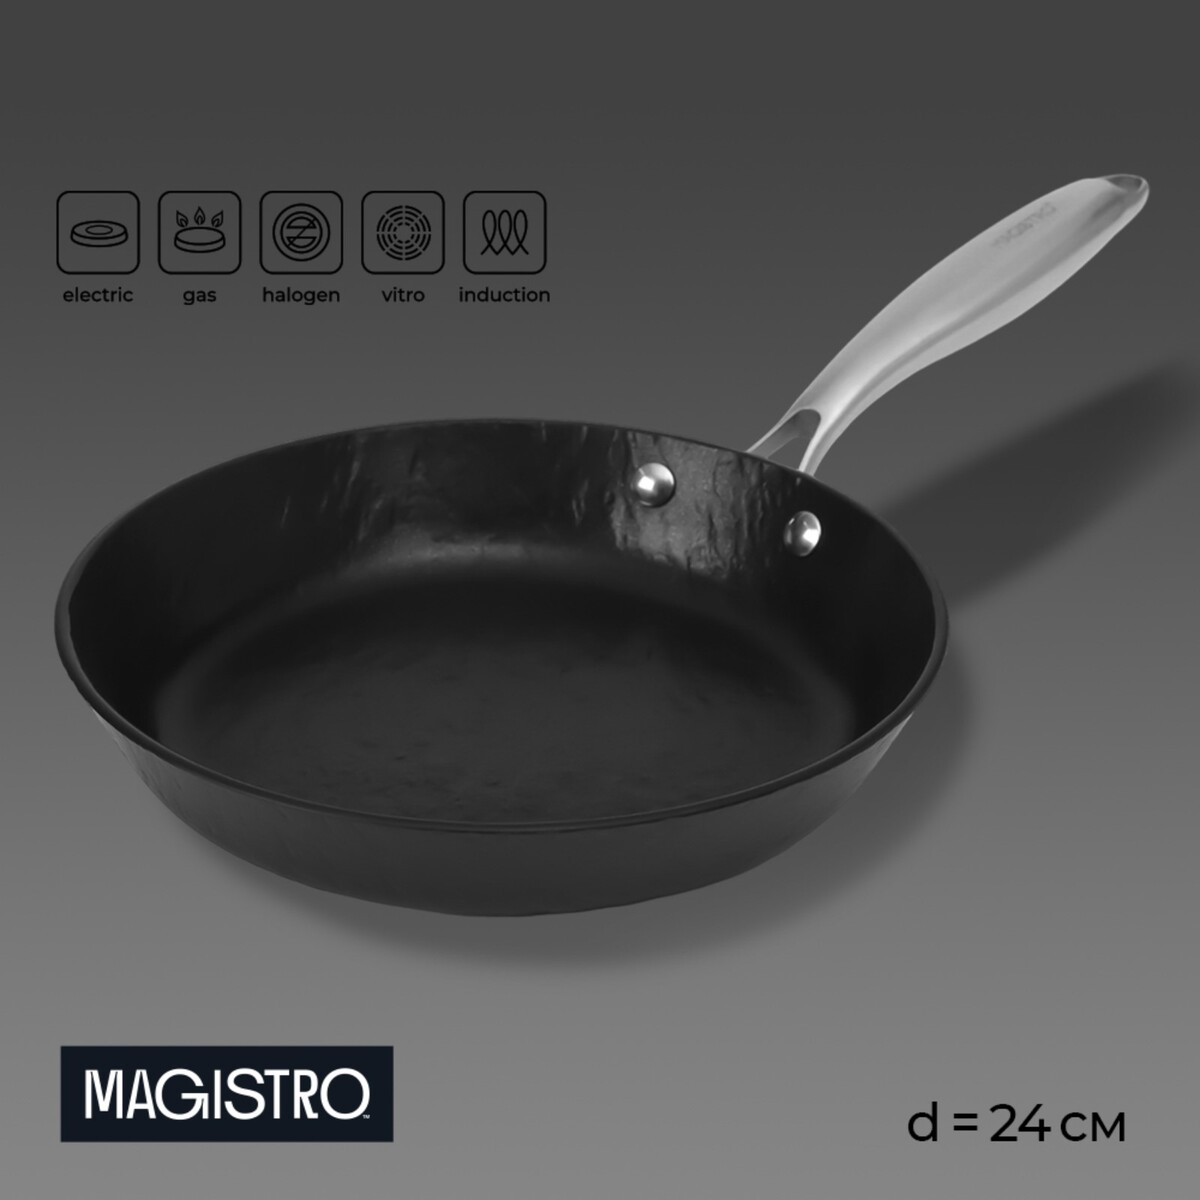 Сковорода magistro rock stone, d=24 см, h=4,5 см, антипригарное покрытие, индукция, цвет черный сковорода нержавеющая сталь 28 см антипригарное покрытие катунь общепит кт об са 28 индукция